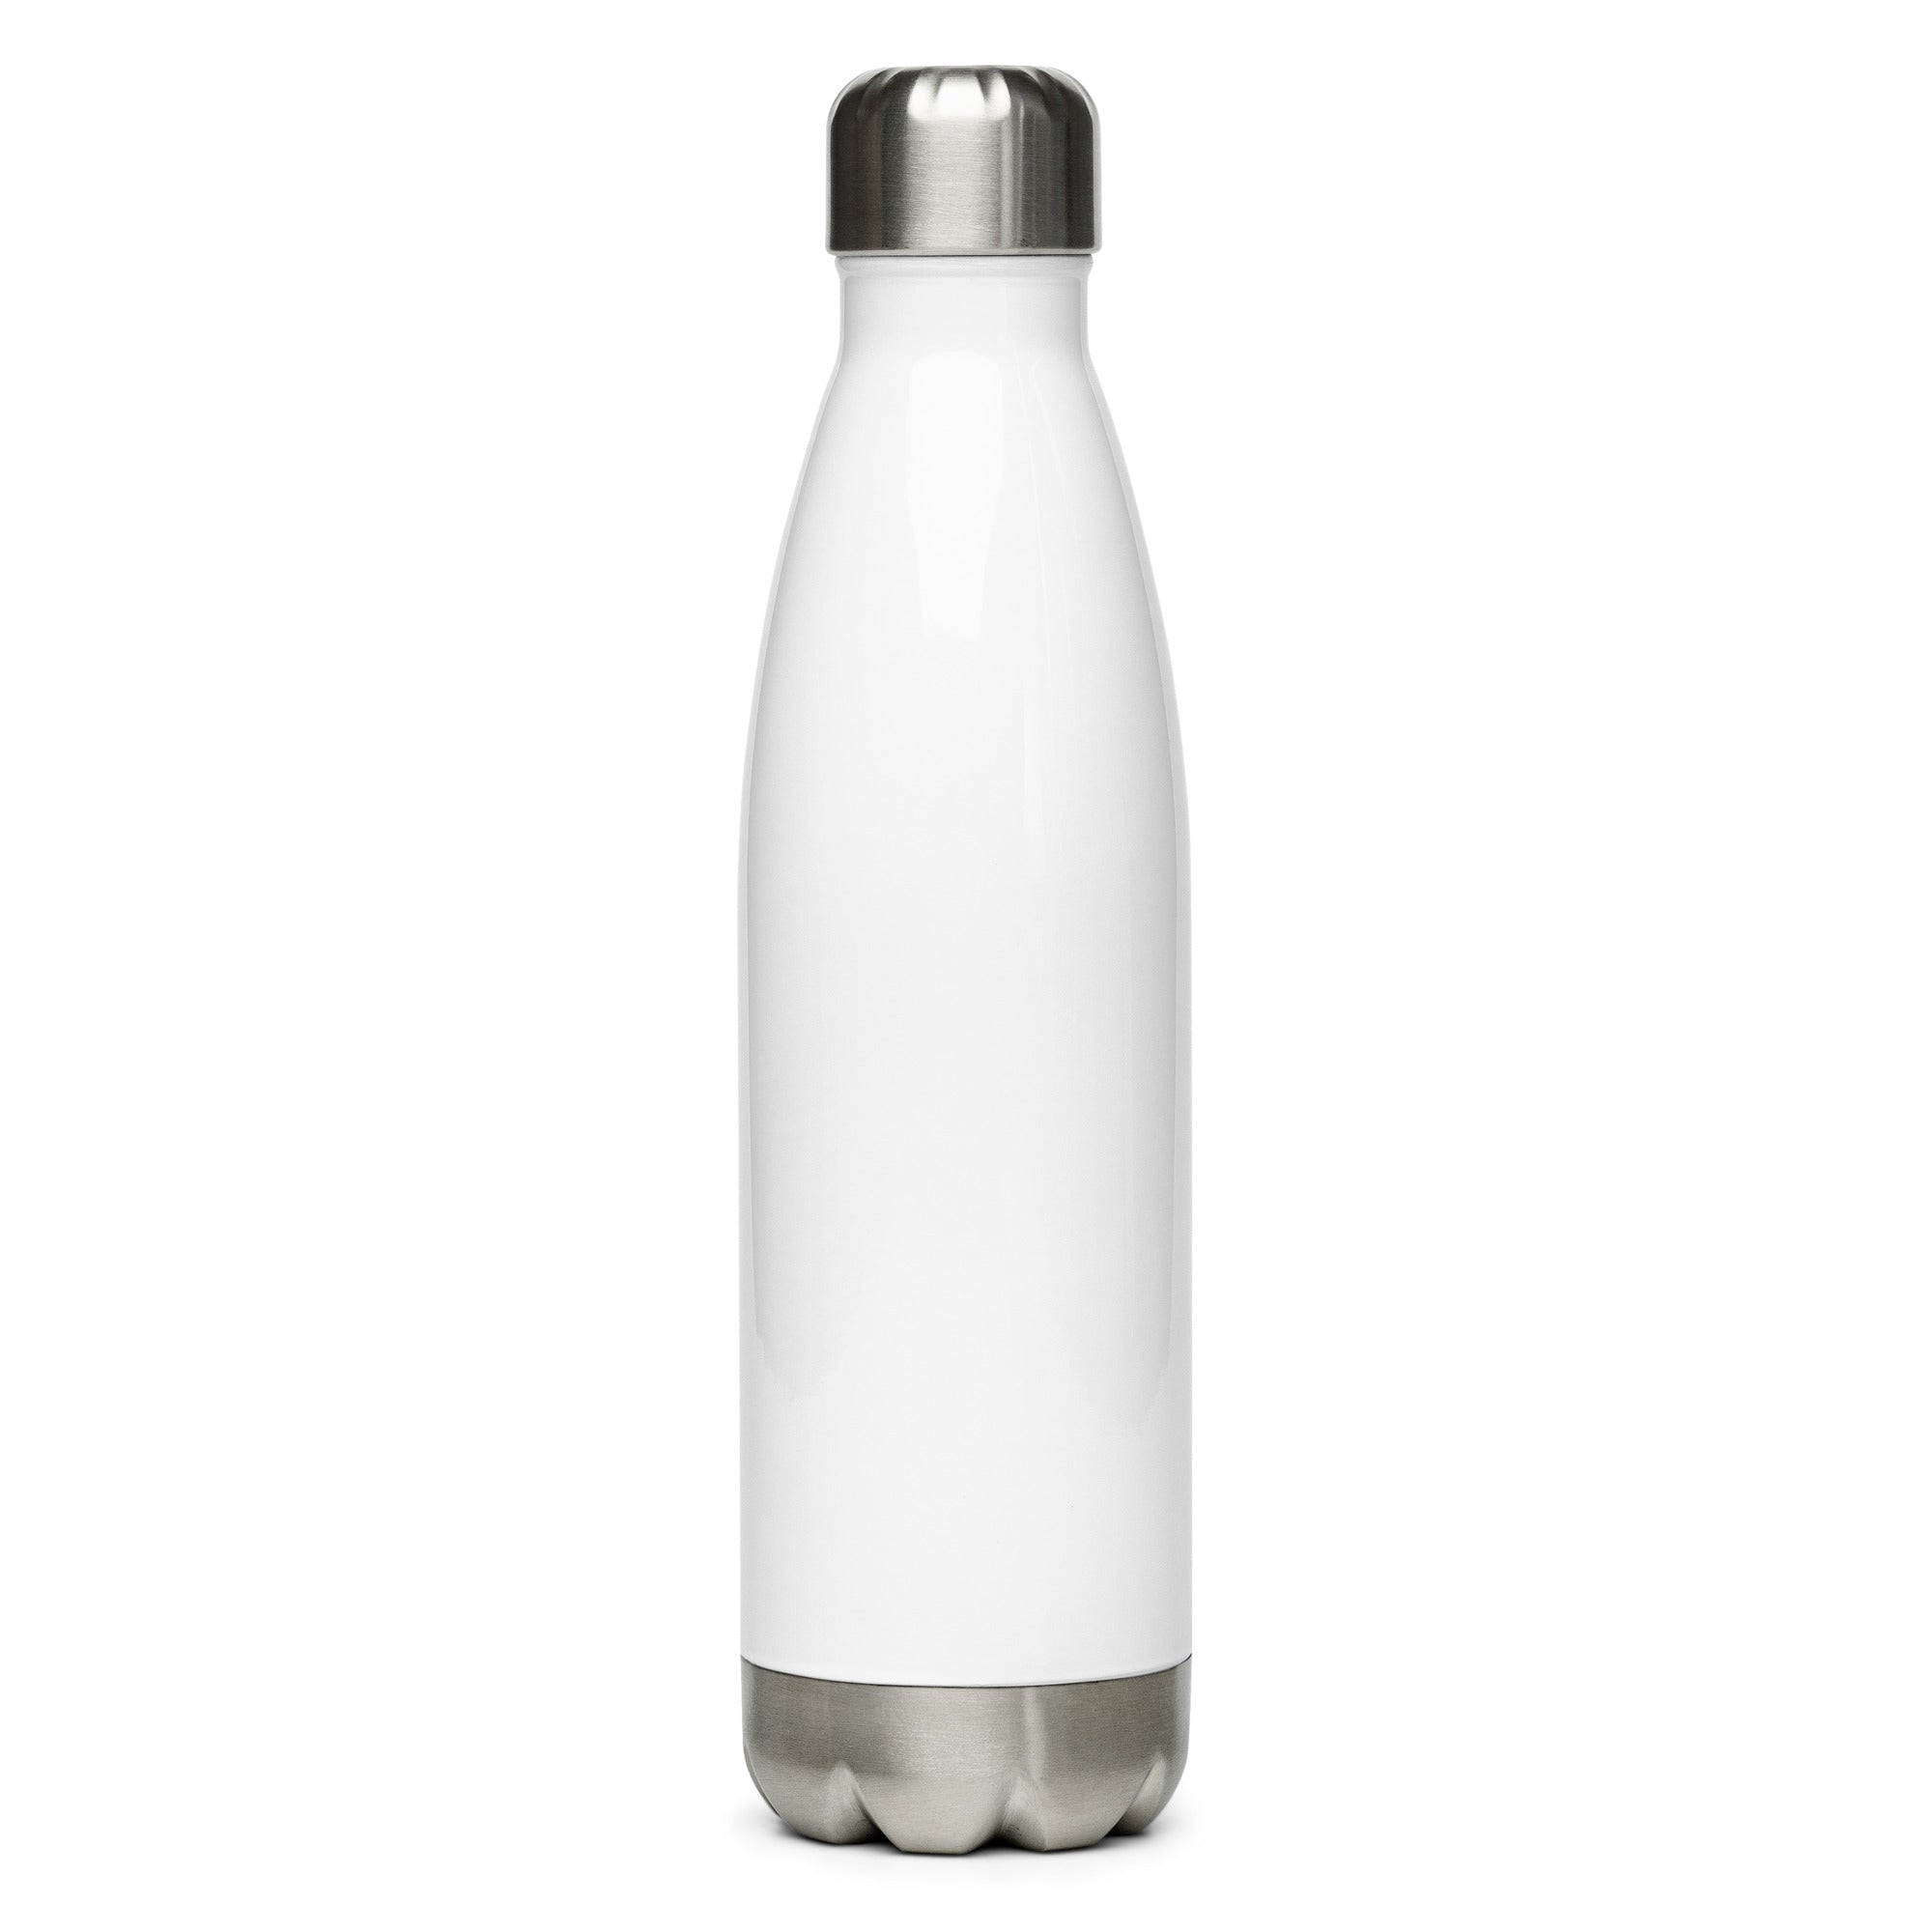 Stainless steel water bottle - Matthew 6:6